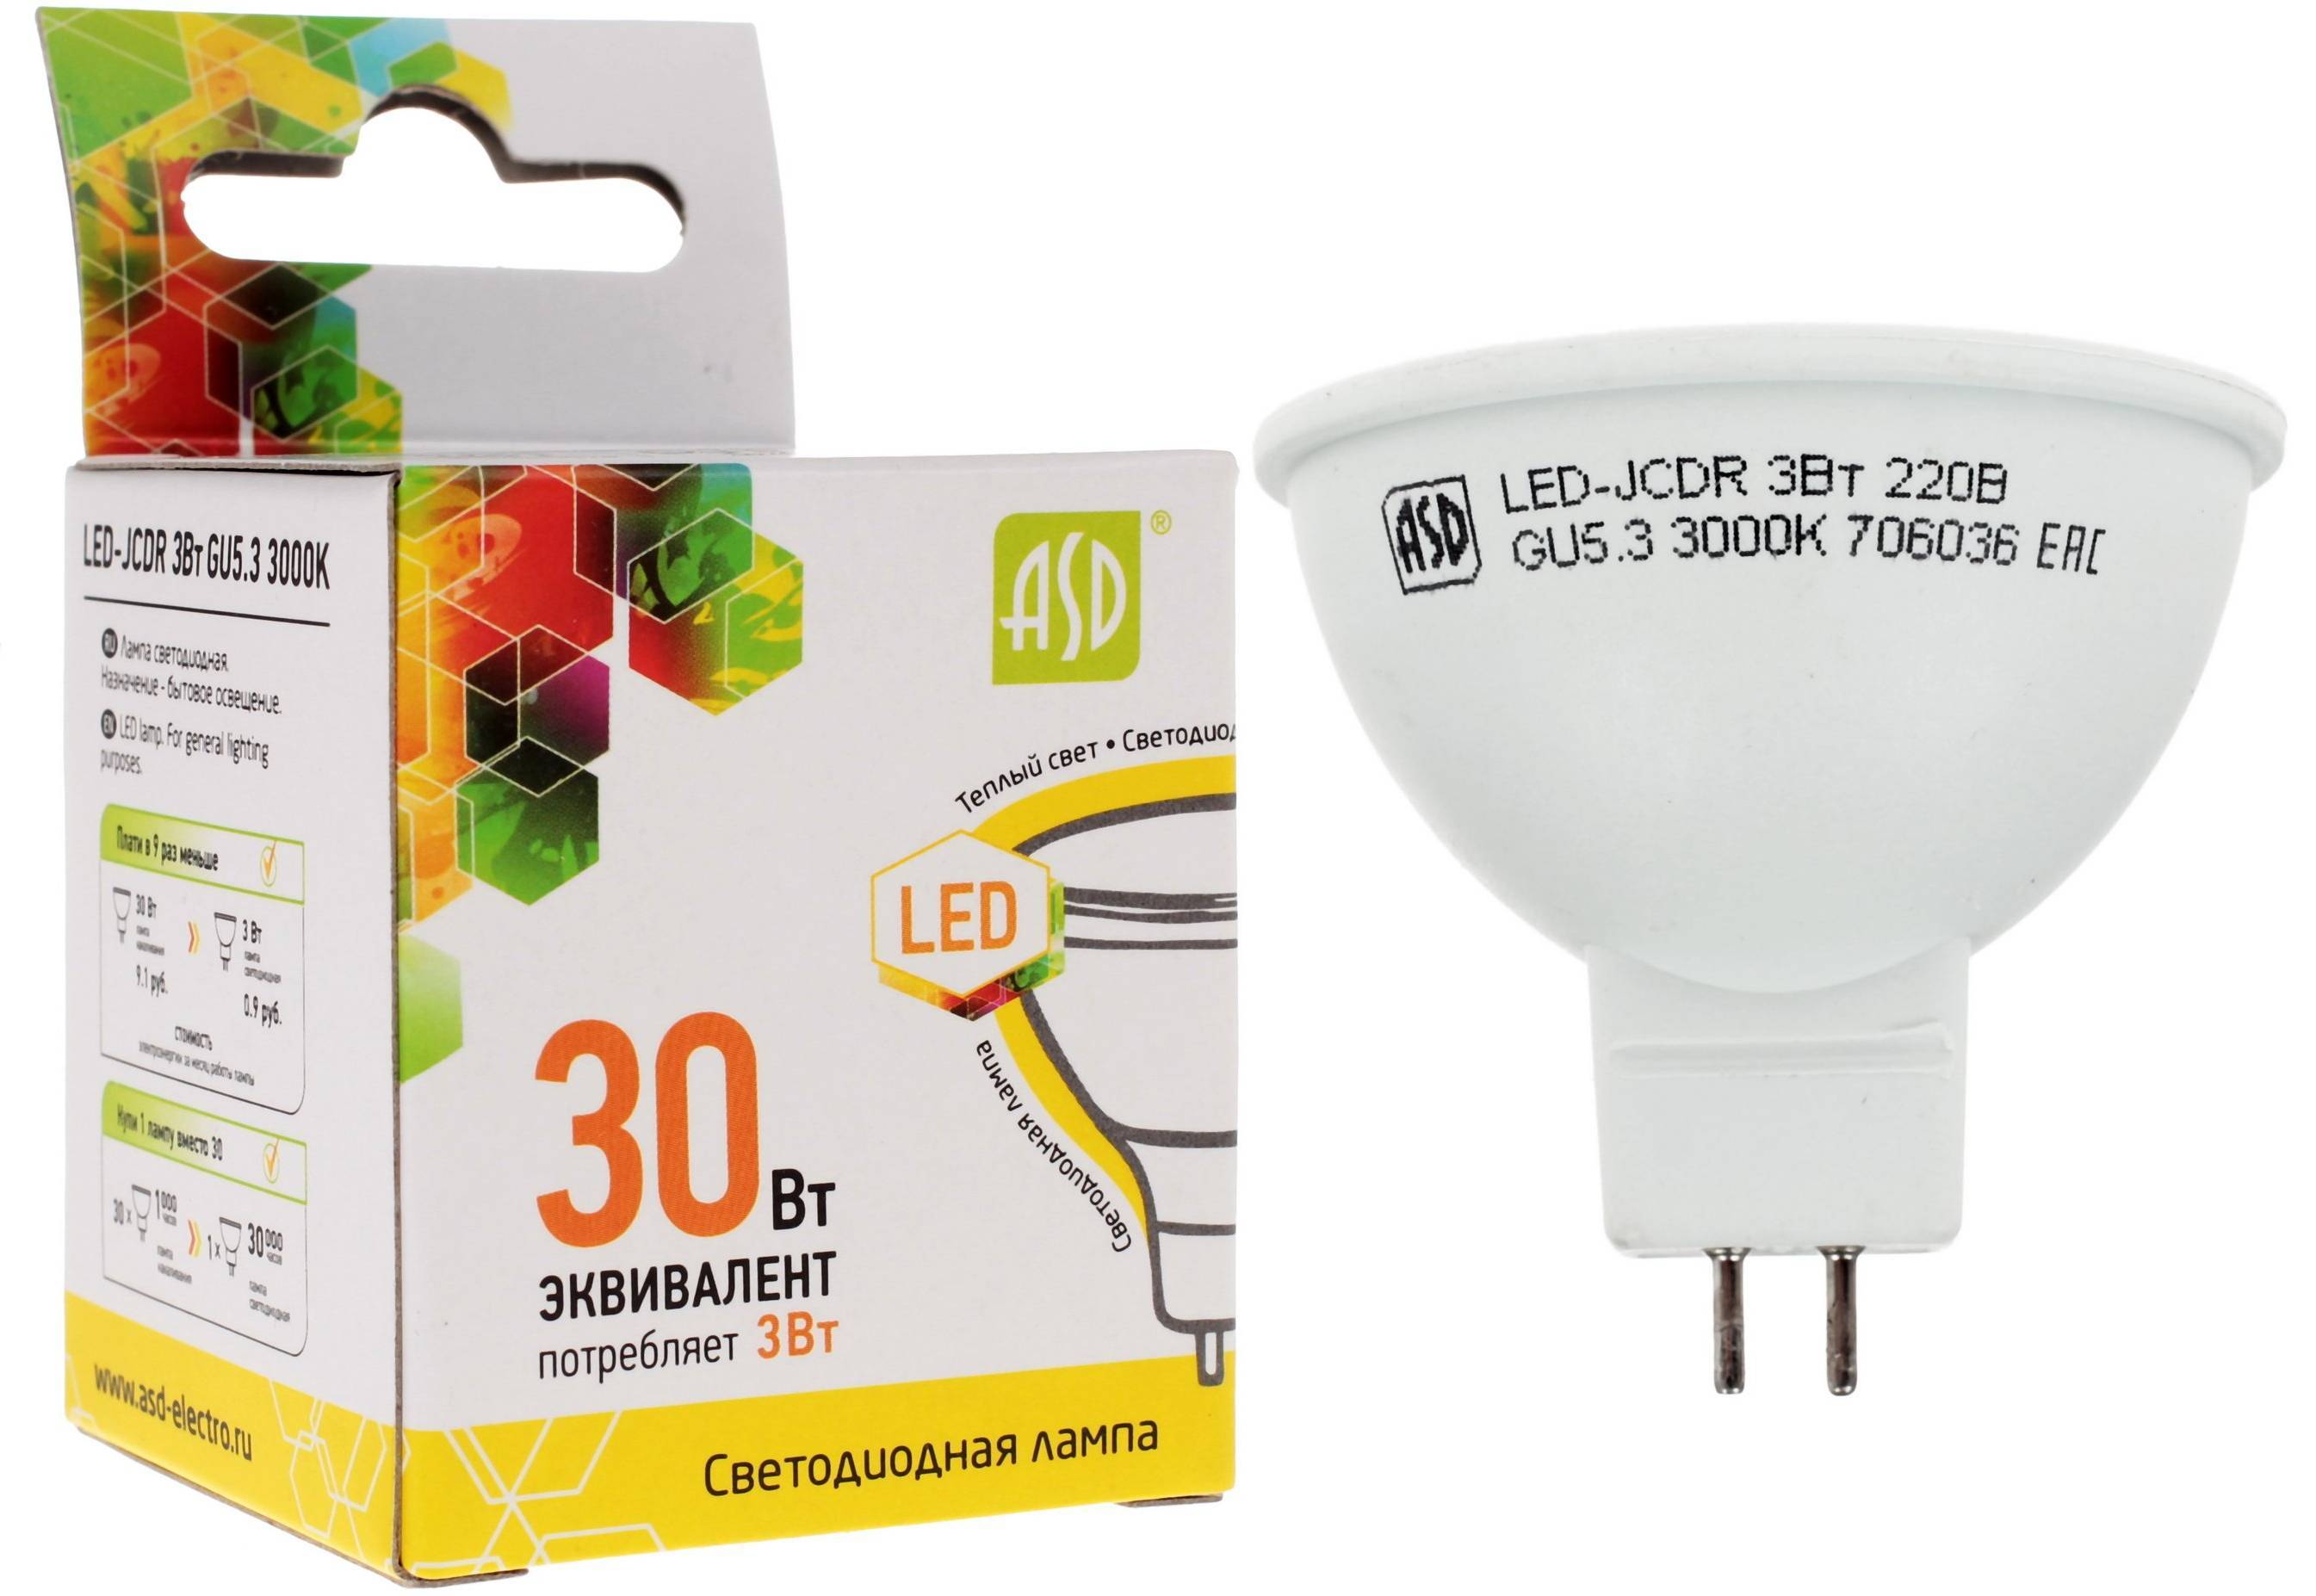 Светодиодные лампы gu 5.3 220. Led-JCDR-Standard 3вт 230в gu5.3 3000к. Светодиодная лампа ASD 5.5 Вт. Светодиодные лампы g5 .3 220 JCDR. Лампа светодиодная JCDR 10.5Вт 220в gu5.3.